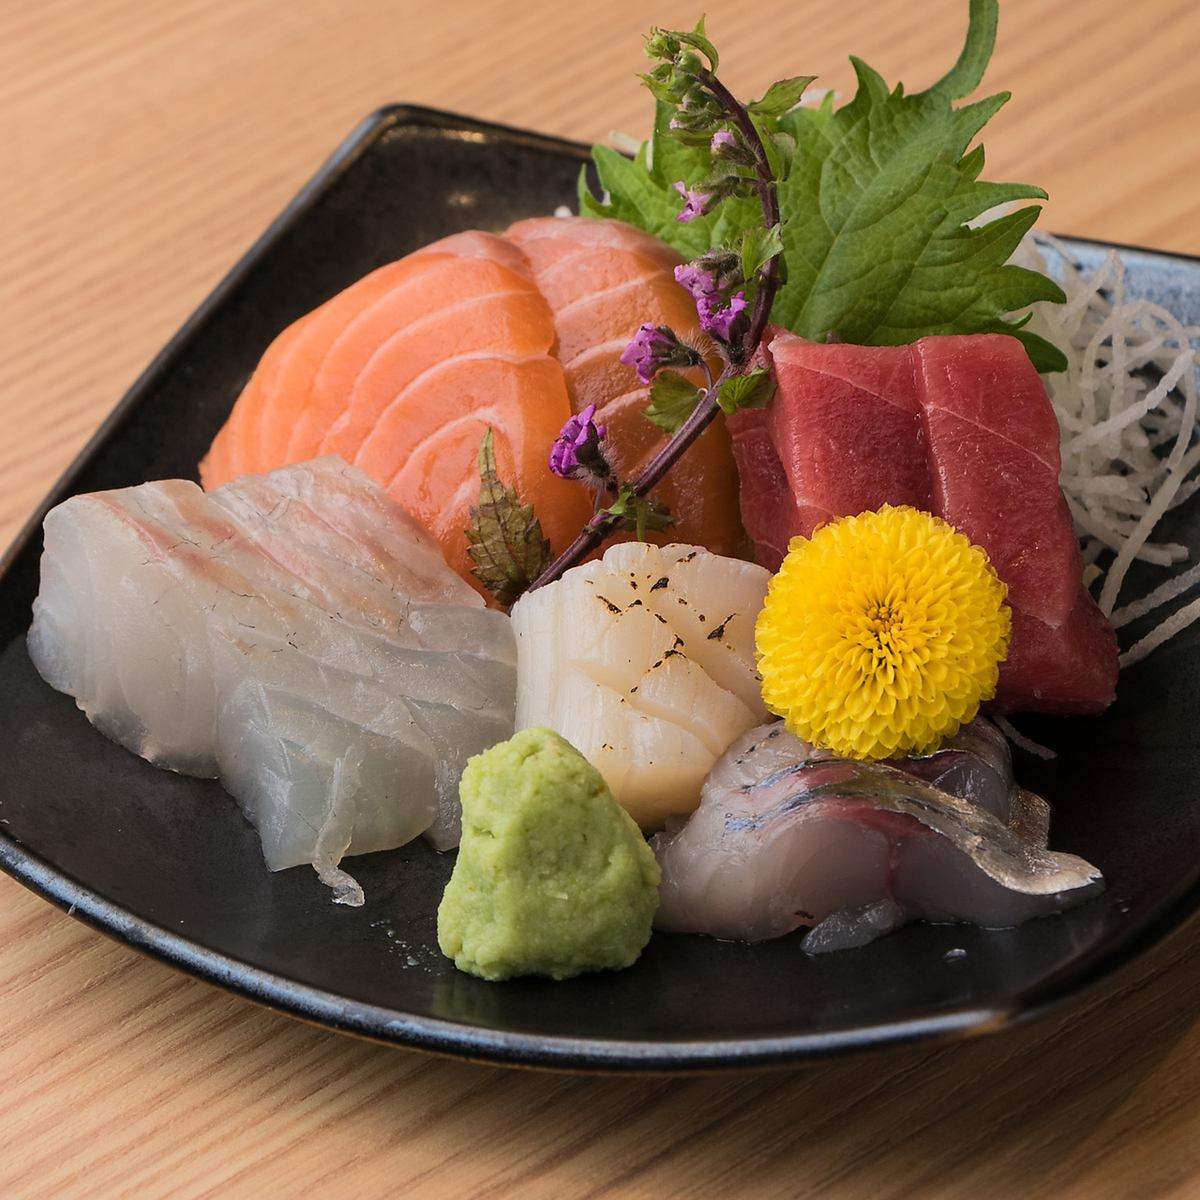 リーズナブルで美味しいお寿司やお刺身をご賞味ください。